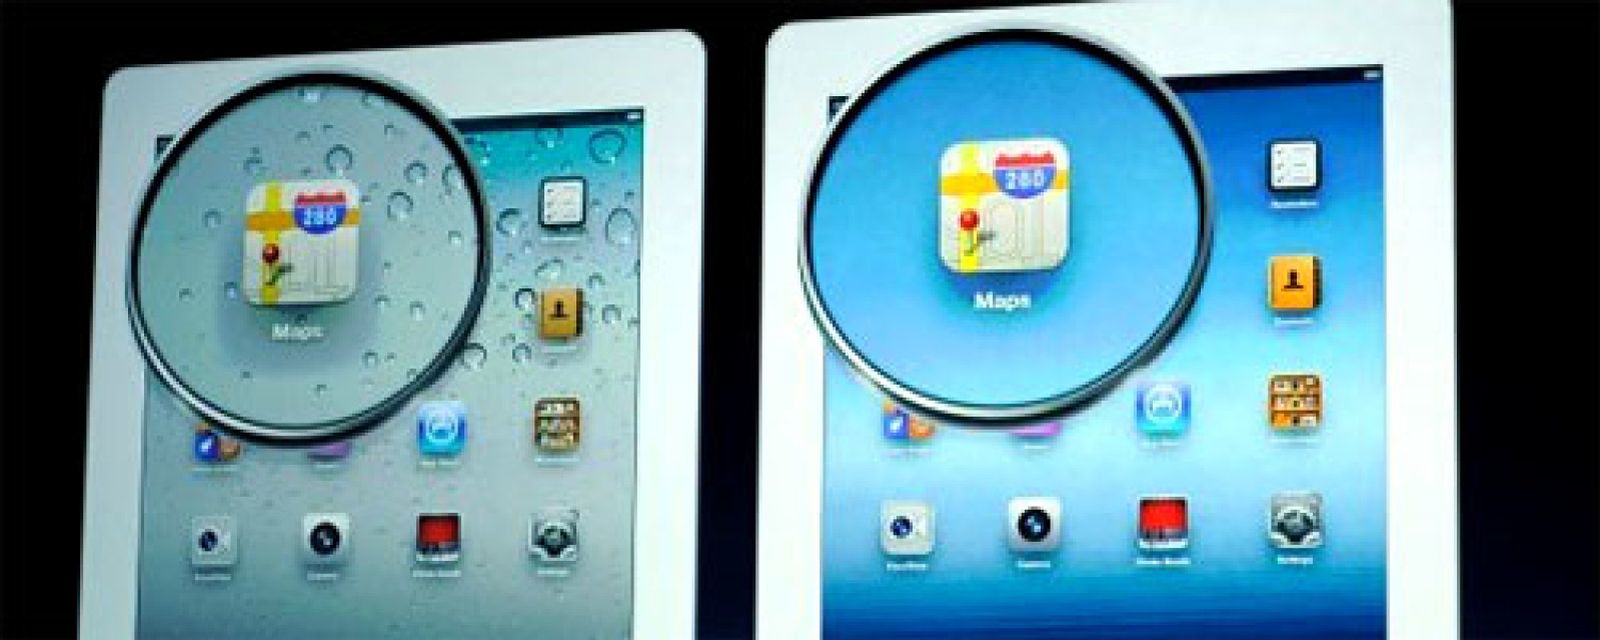 Foto: El mayor enemigo del Nuevo iPad es... el iPad obsoleto